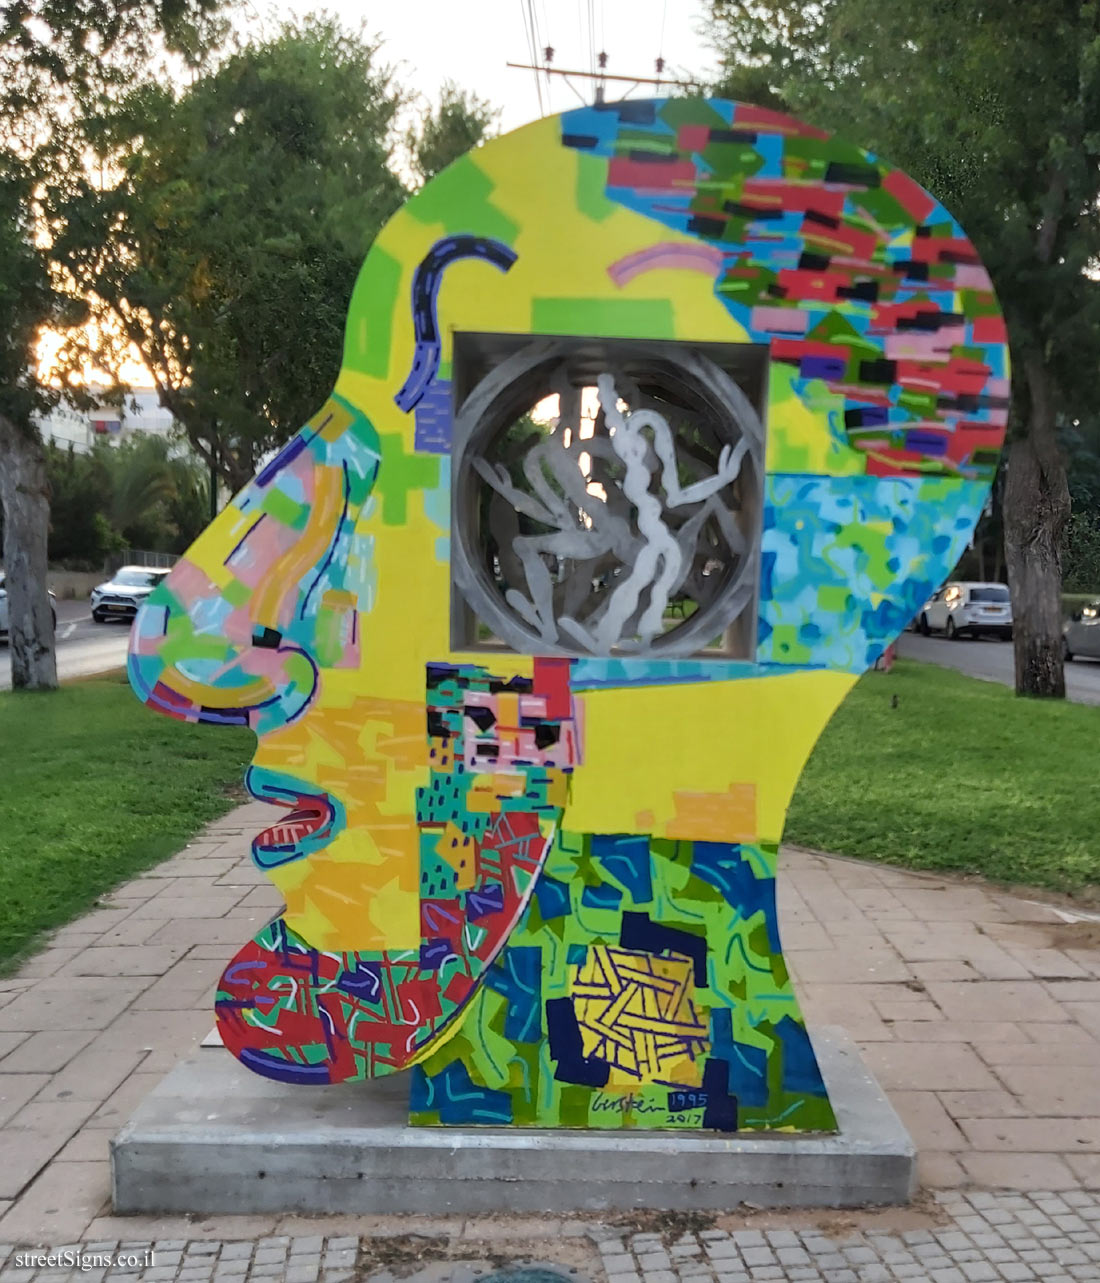  Sculpture Garden - "Big Head" Outdoor sculpture by David Gerstein - Weizmann Blvd 20, Ramat Hasharon, Israel